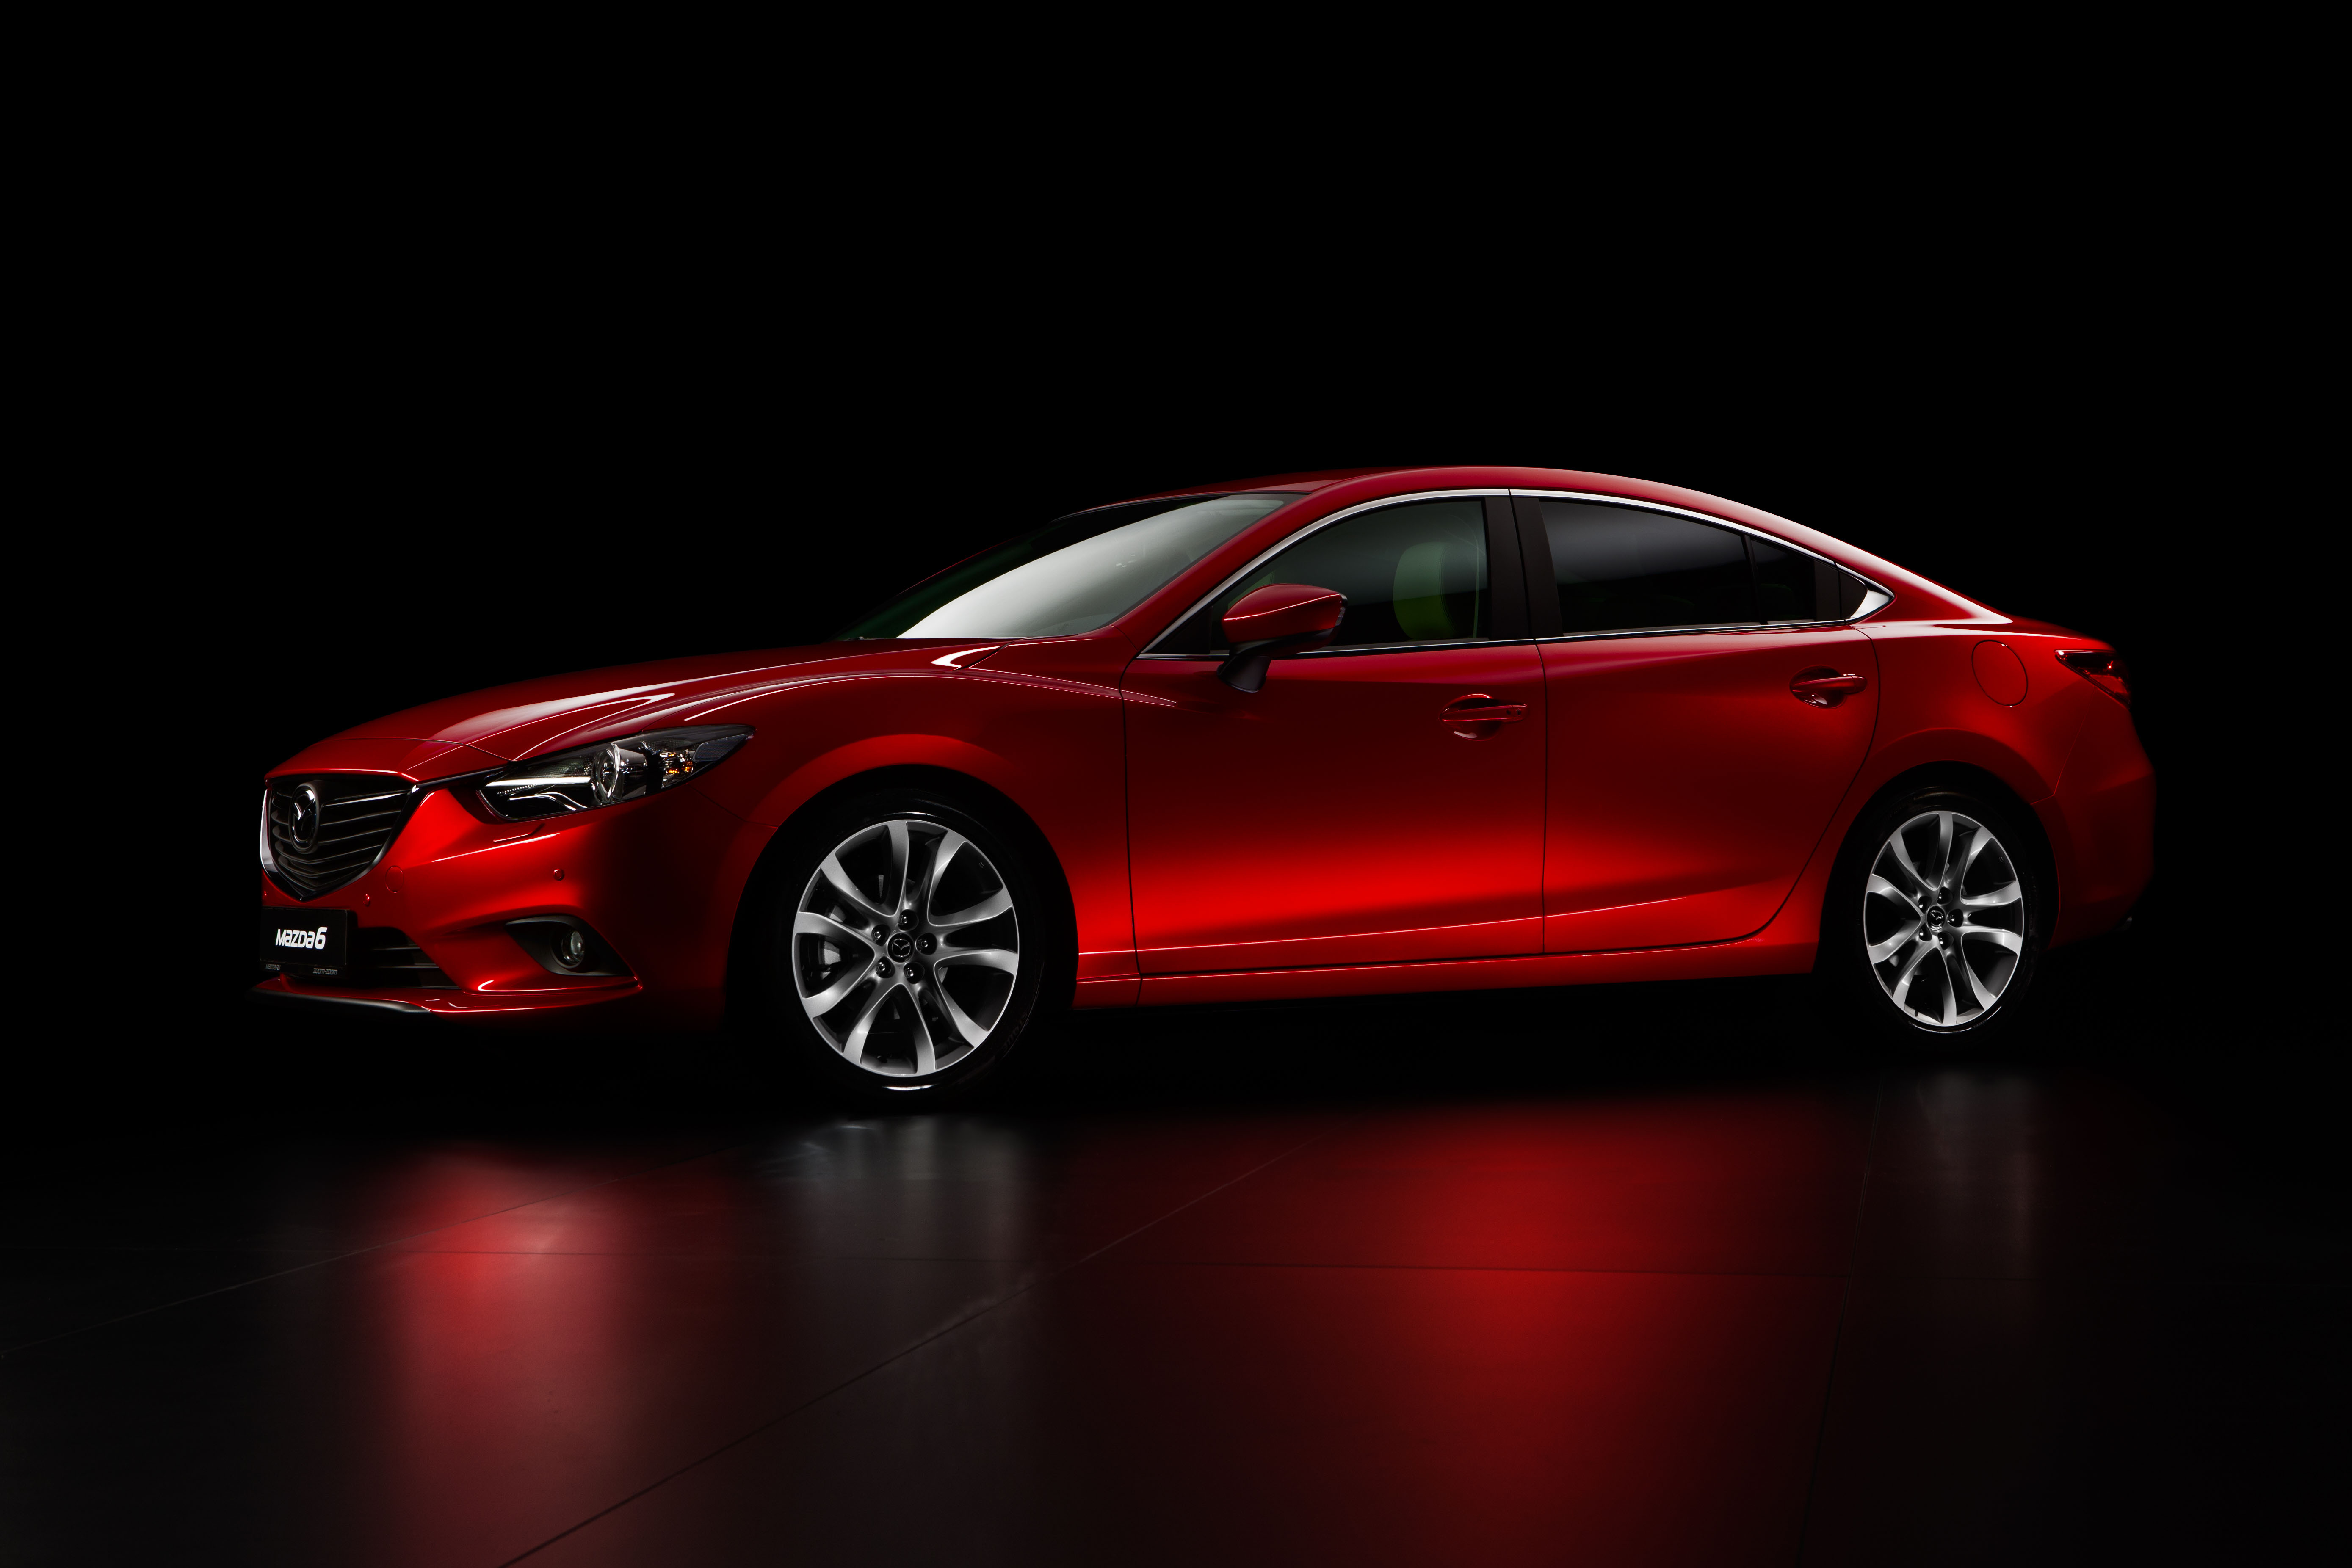 Red mazda. Mazda 6. Mazda 6 sedan. Mazda Mazda 6 2013. Мазда 6 красная седан.